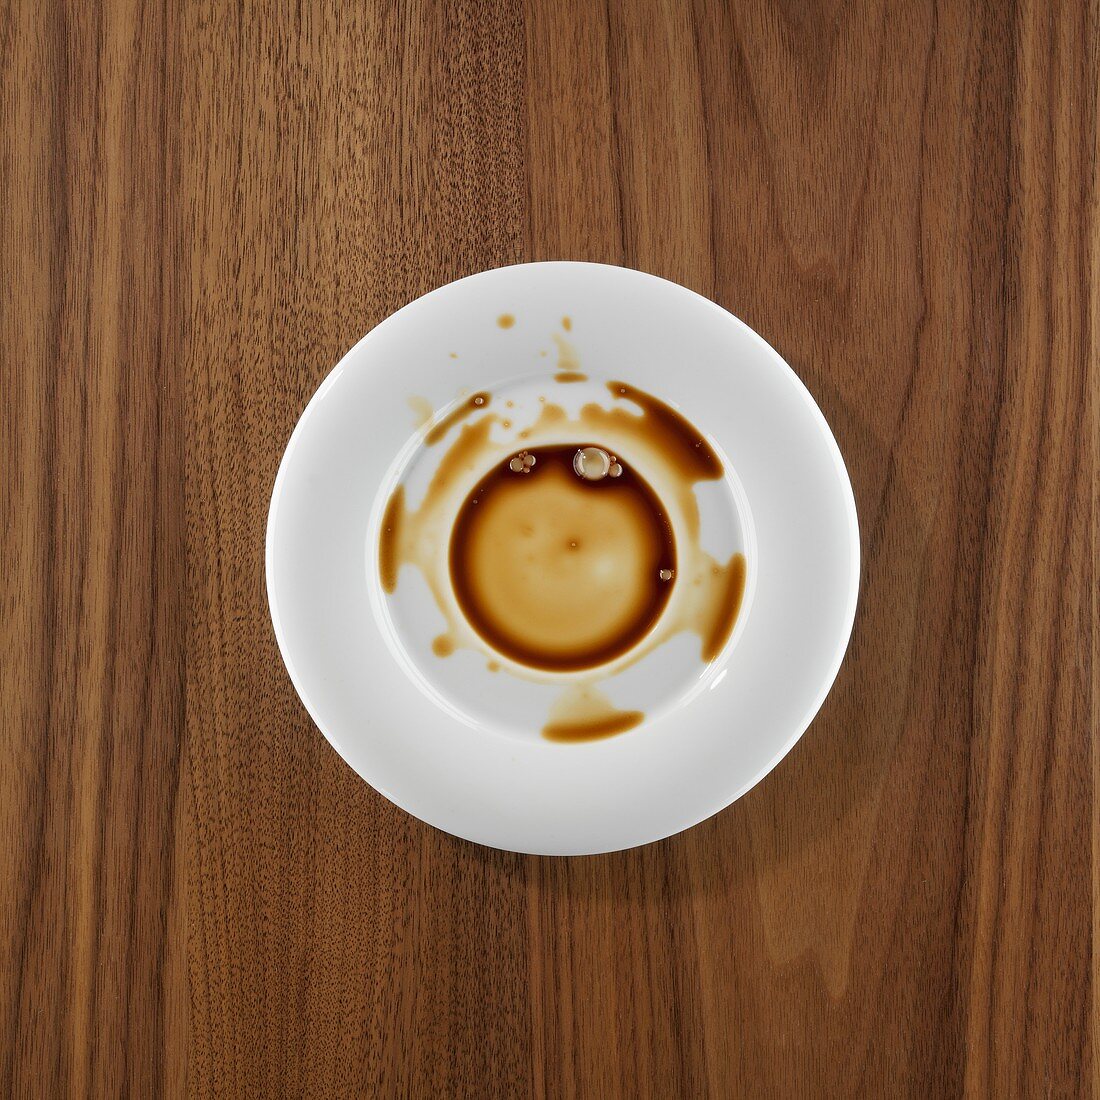 Untertasse mit Kaffeeflecken